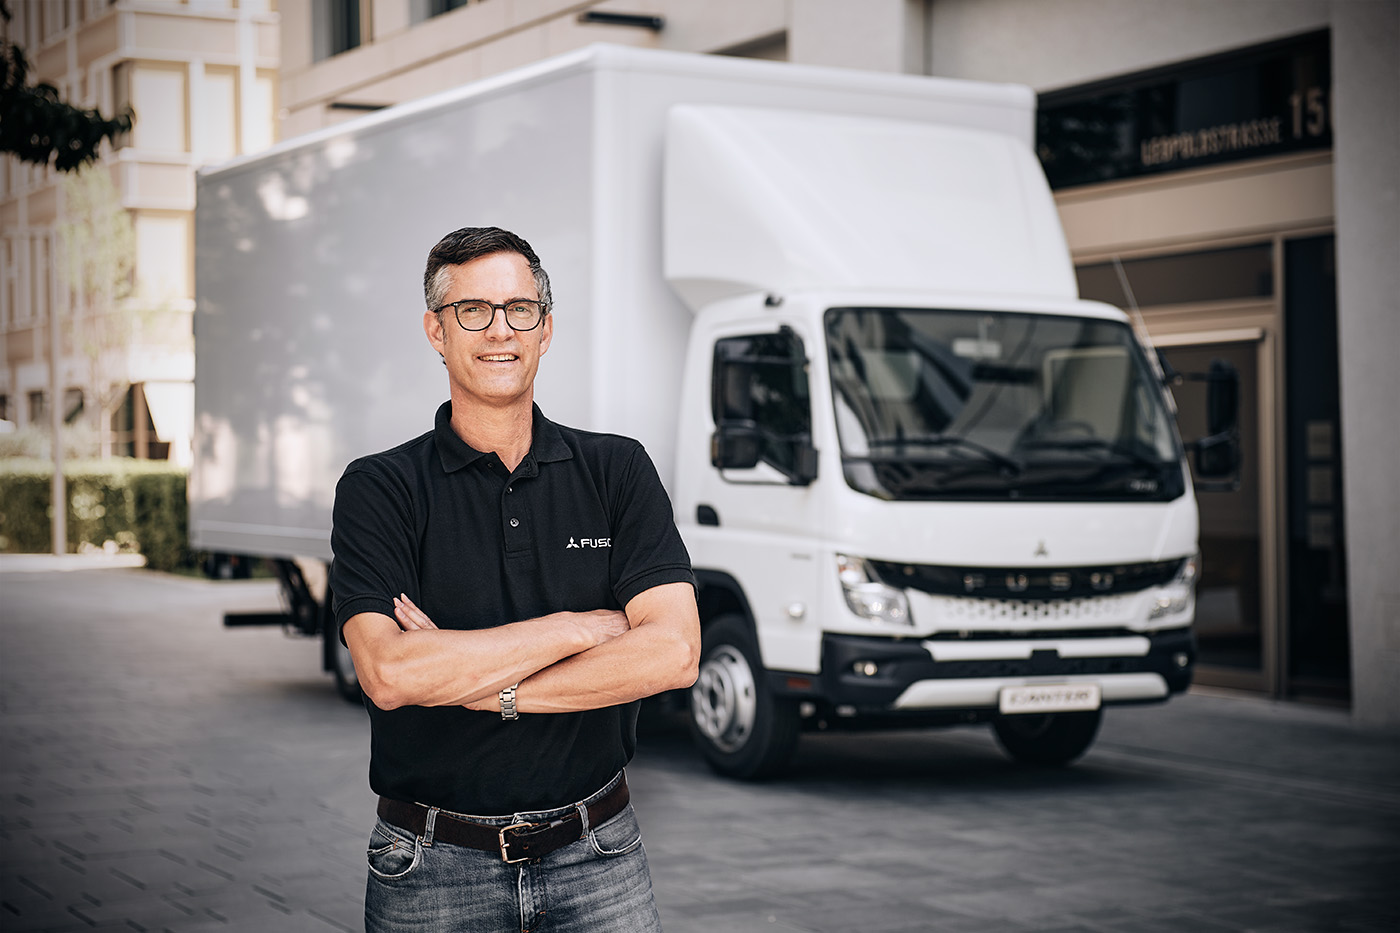 Χάρη στη FUSO Europe, η ίδια η μάρκα και το Canter απέκτησαν ένα νέο δίκτυο διανομής στη Γερμανία πριν από 20 χρόνια ως μέρος της Daimler Trucks. Ο Erk Roennefarth, ο σημερινός Διευθυντής του Ευρωπαϊκού Τμήματος Μάρκετινγκ & Διαχείρισης Προϊόντος εργάζεται στην εταιρεία από τότε και όλο και κάτι γνωρίζει για τα «εξωτικά» προϊόντα, την καινοτομία και τη λατρεία για το Canter.